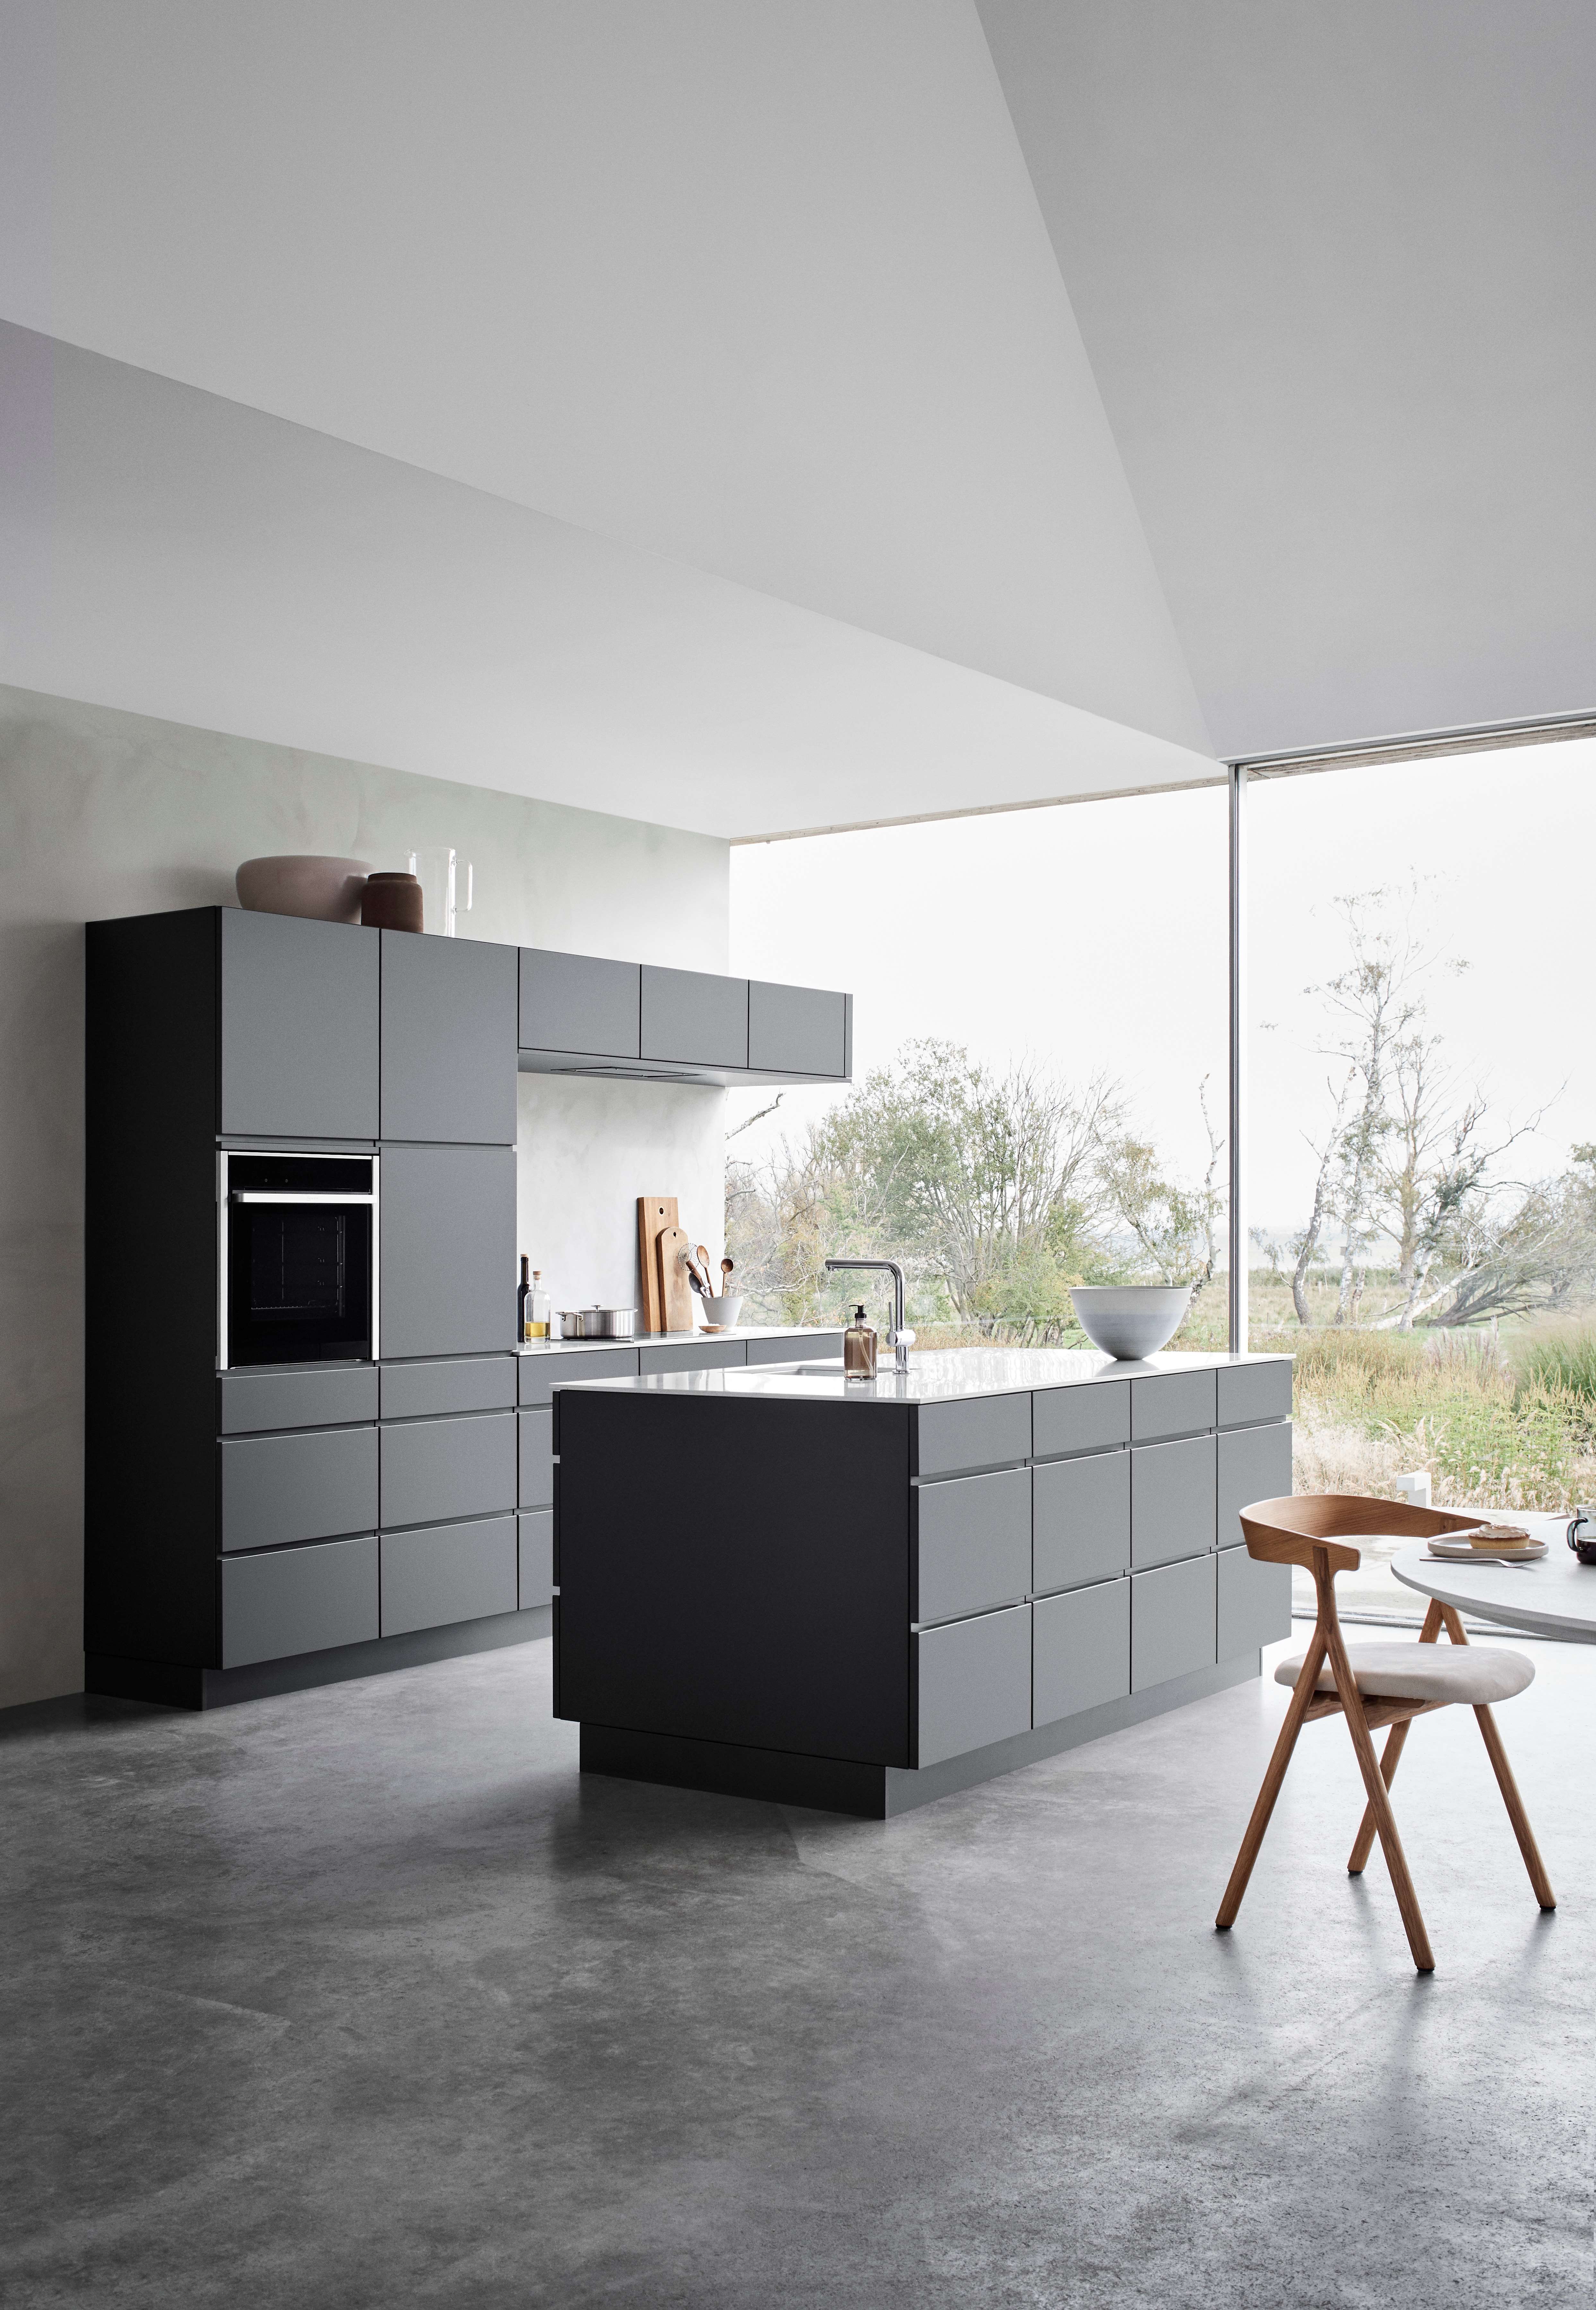 Svart kjøkken med kjøkkenøy og fargede svarte fronter